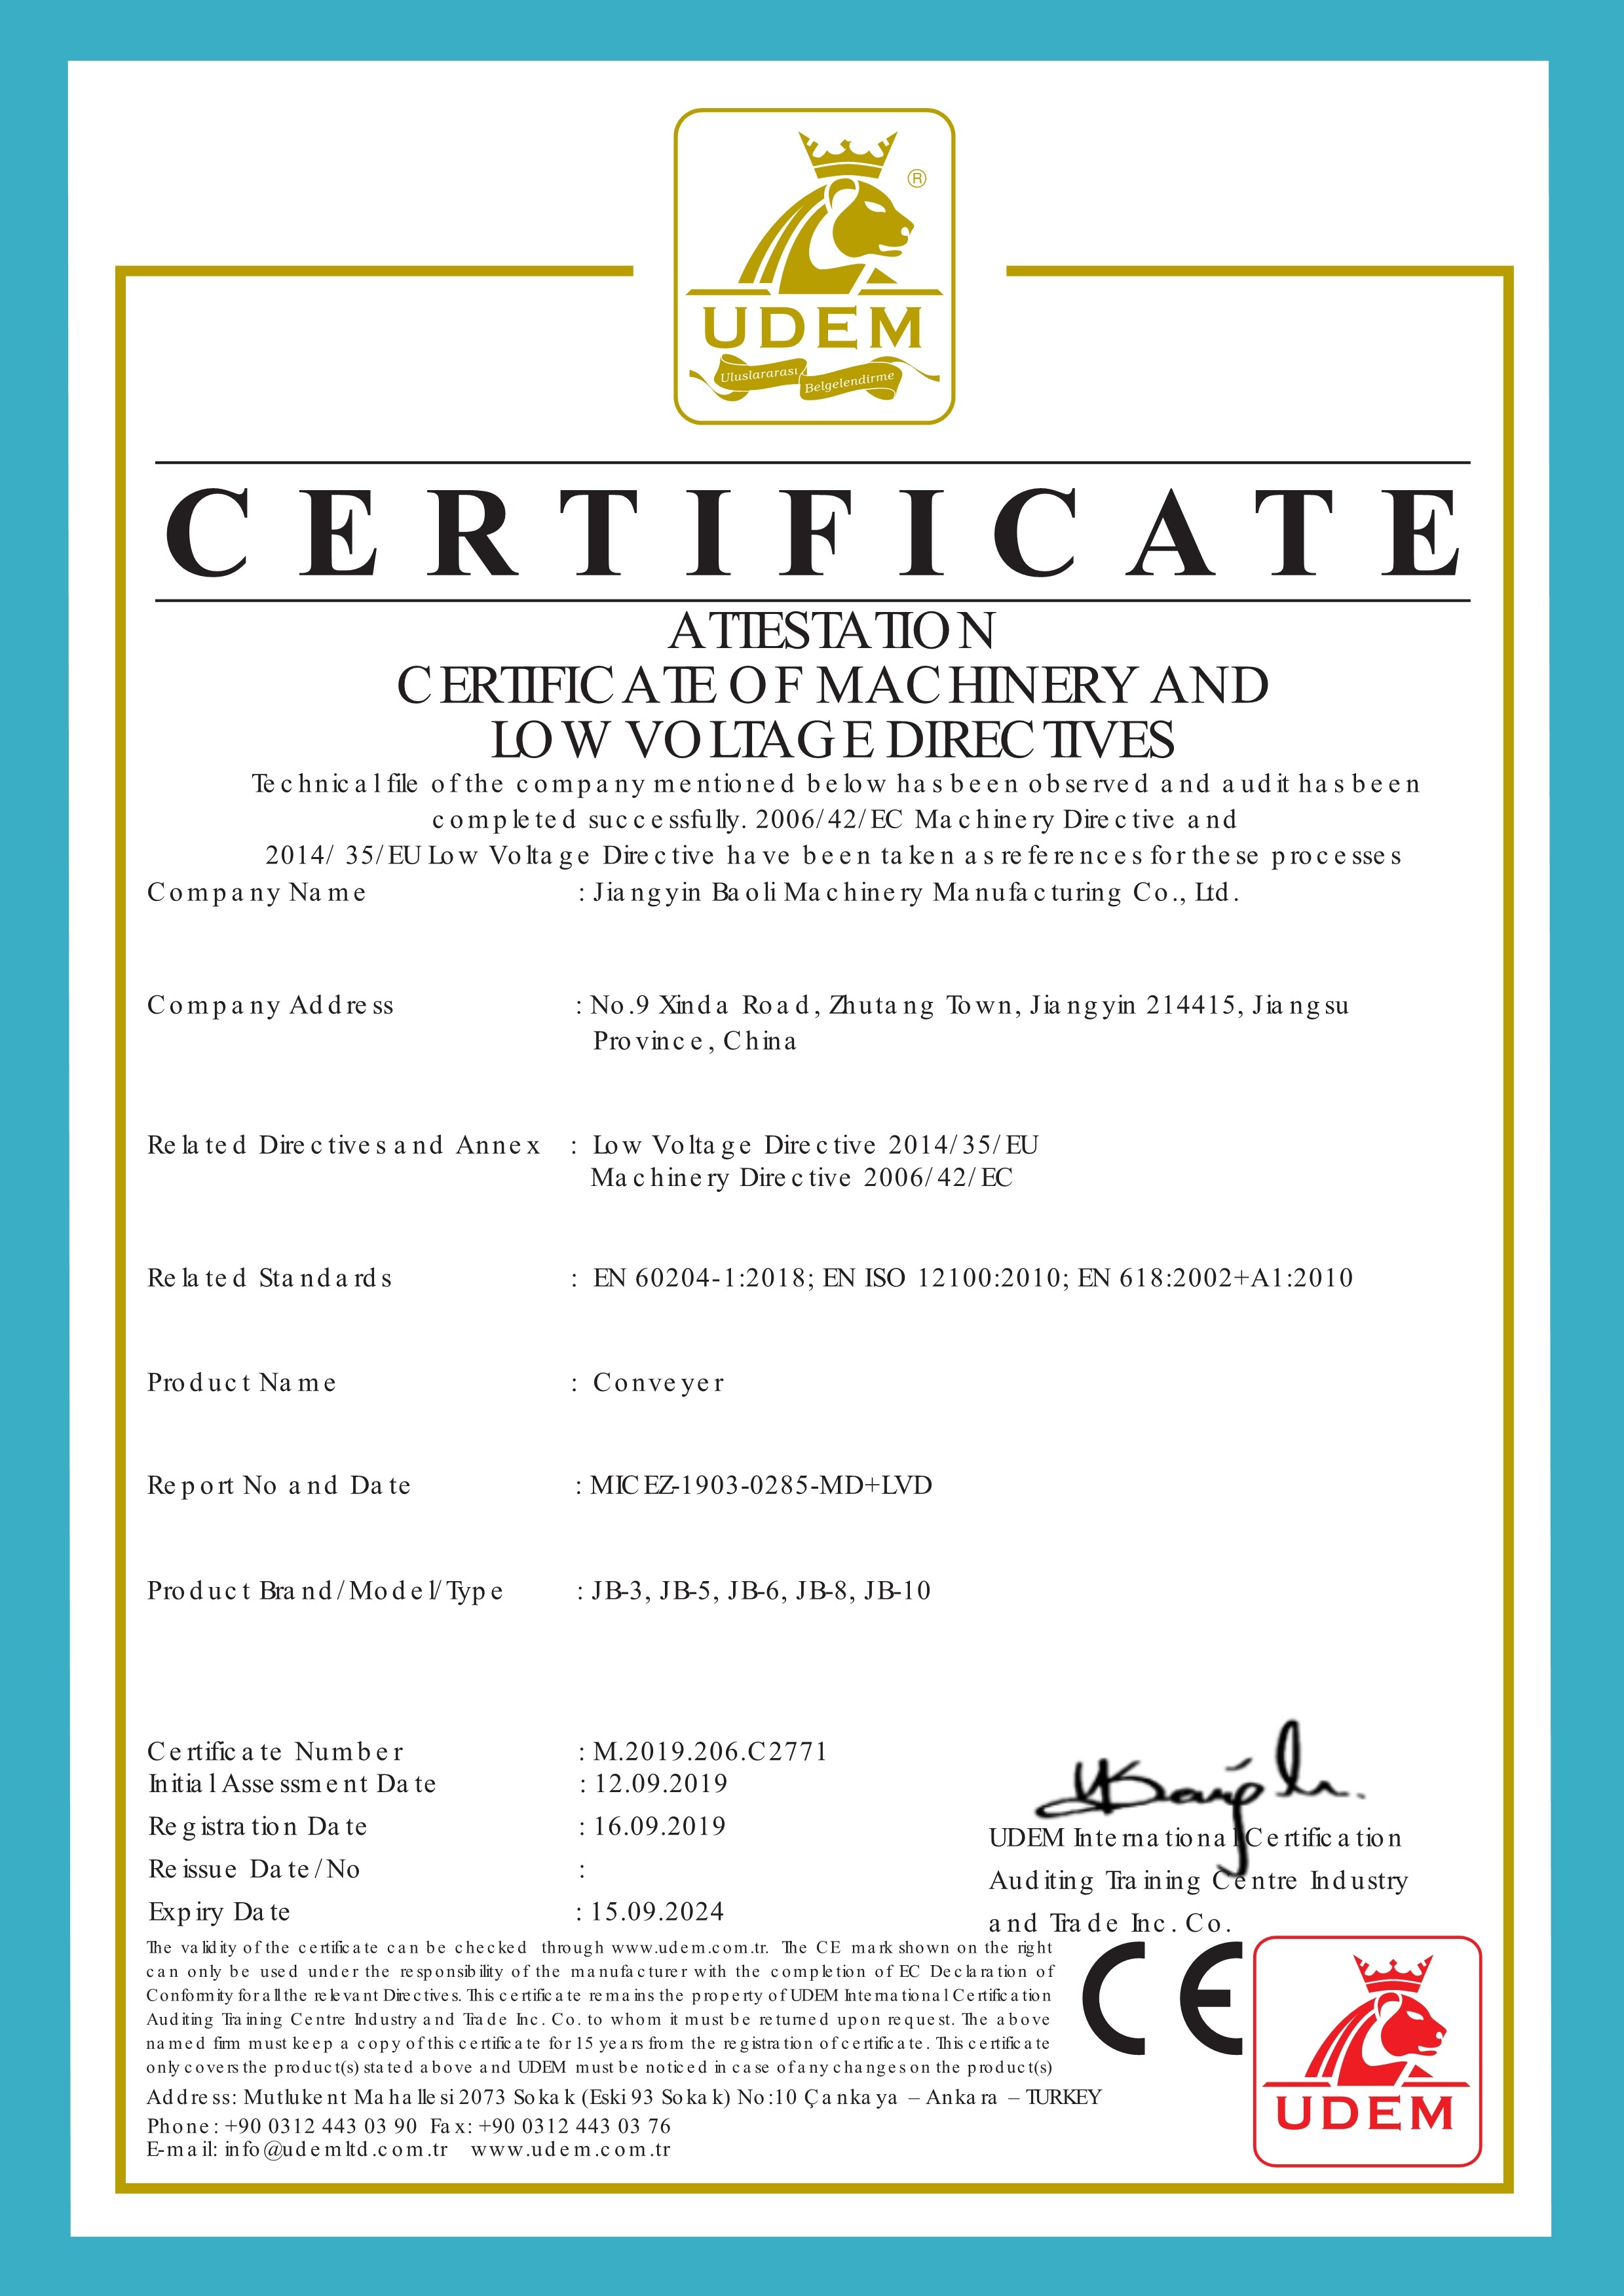 China Jiangyin Baoli Machinery Manufacturing Co., Ltd. Certification